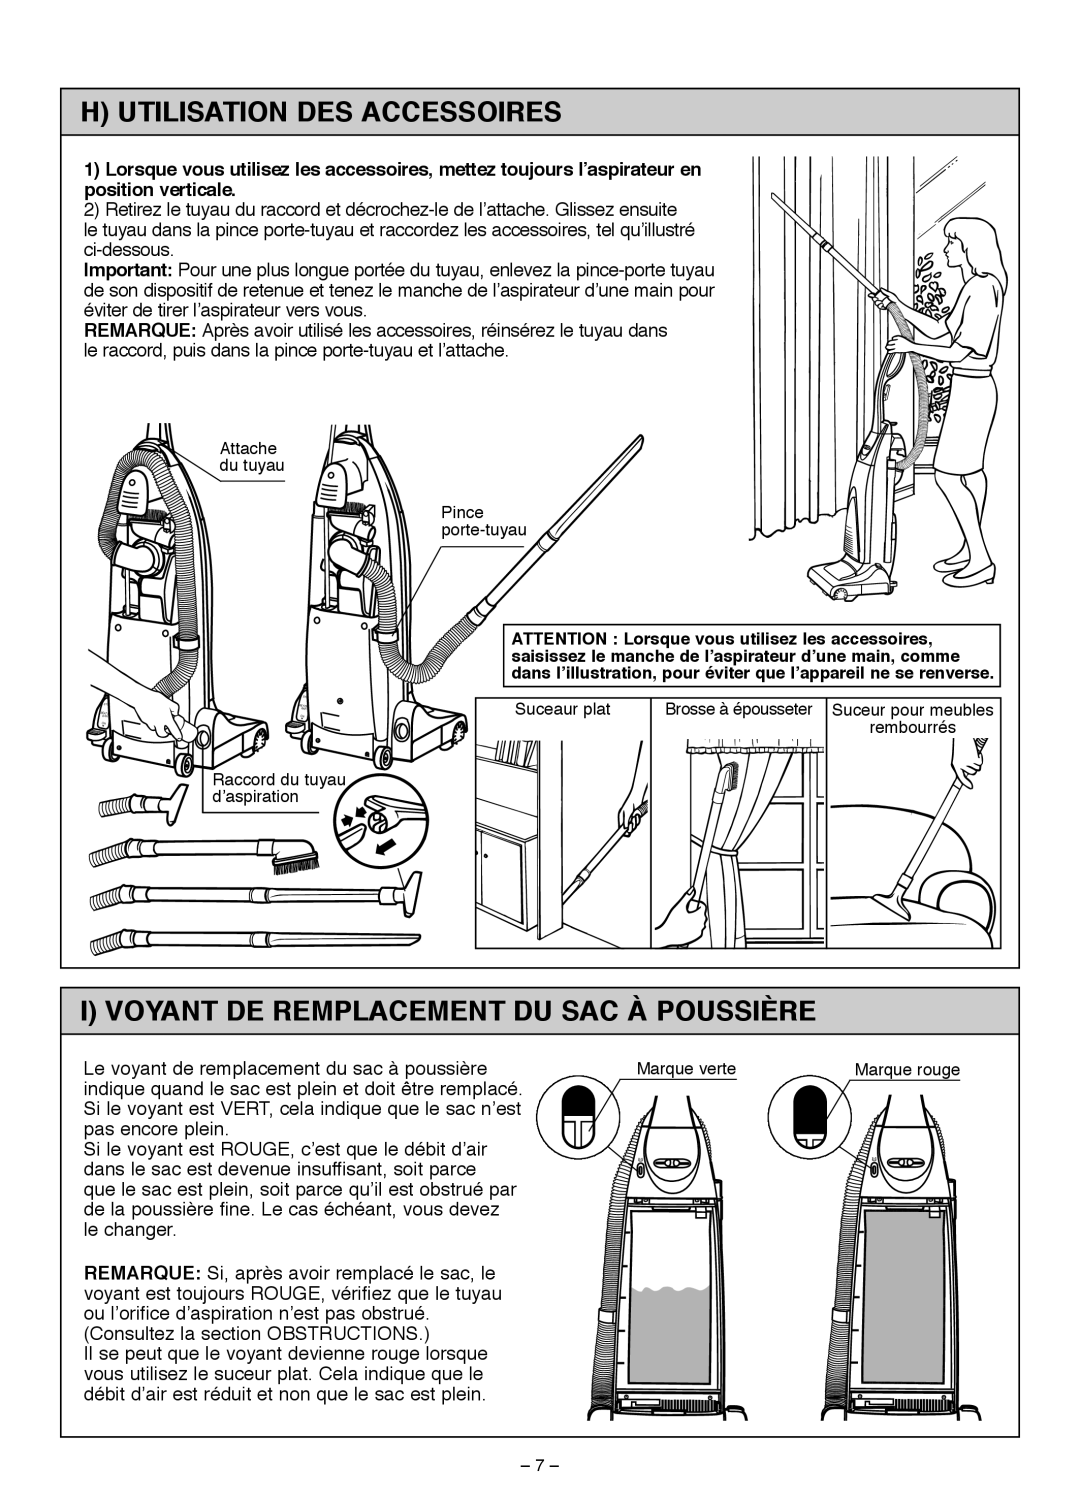 Miele S185 important safety instructions H Utilisation Des Accessoires, I Voyant De Remplacement Du Sac À Poussière 